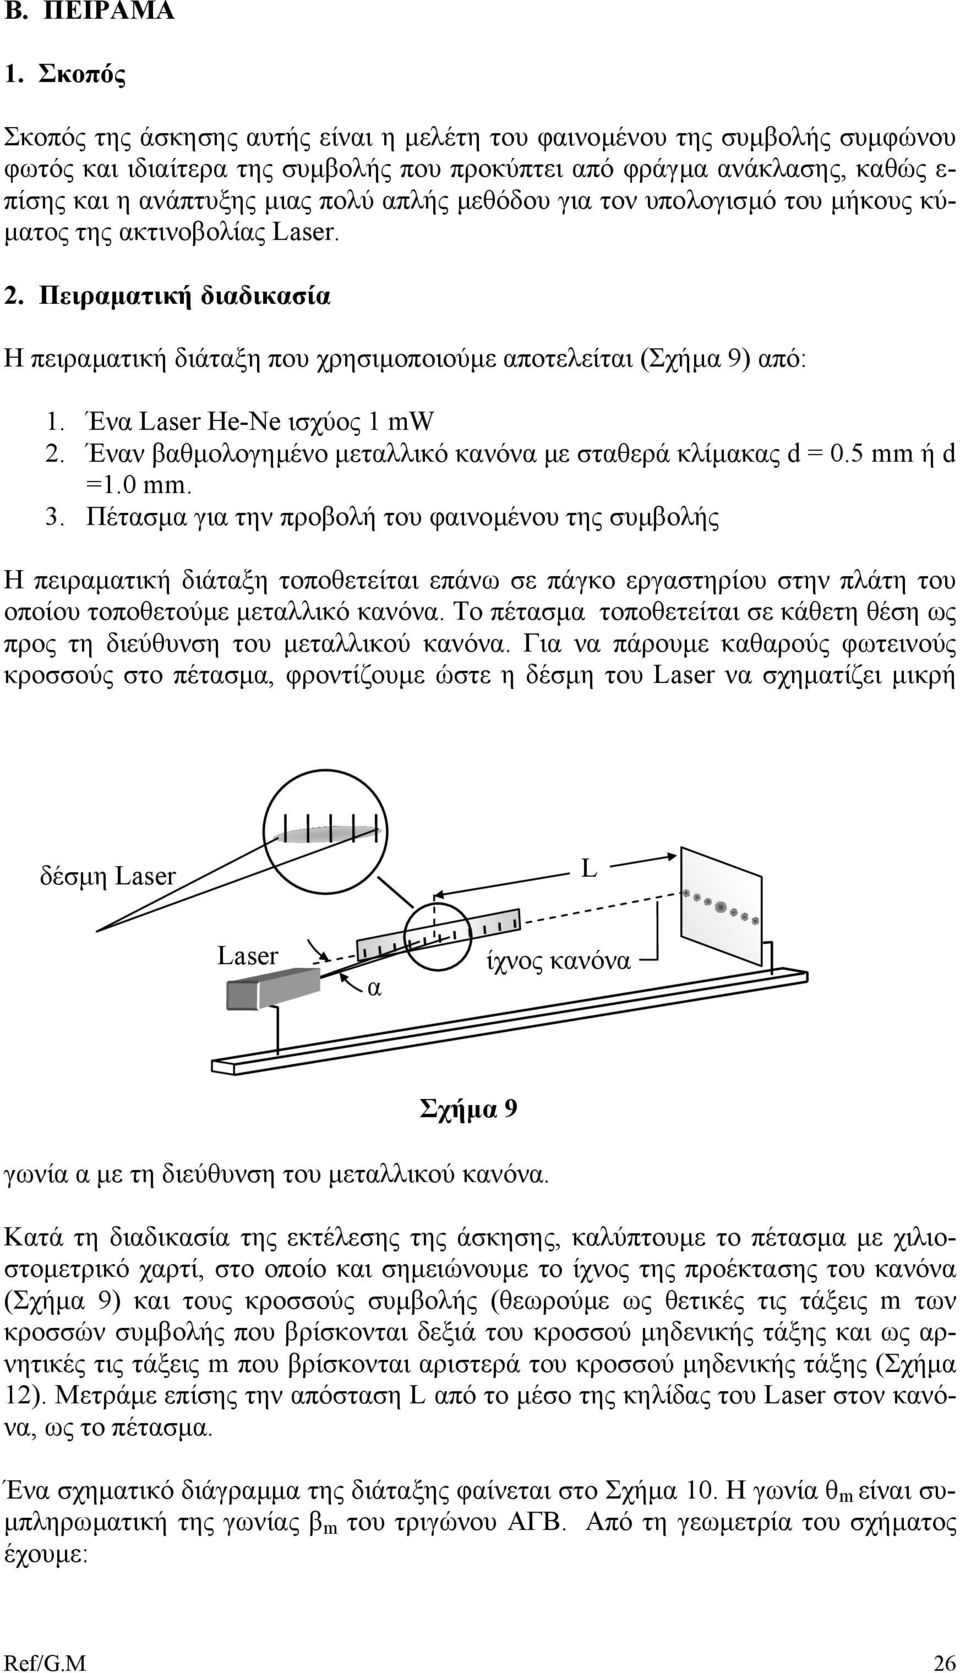 µεθόδου για τον υπολογισµό του µήκους κύ- µατος της ακτινοβολίας Laser. 2. Πειραµατική διαδικασία Η πειραµατική διάταξη που χρησιµοποιούµε αποτελείται (Σχήµα 9) από: 1. Ένα Laser He-Ne ισχύος 1 W 2.